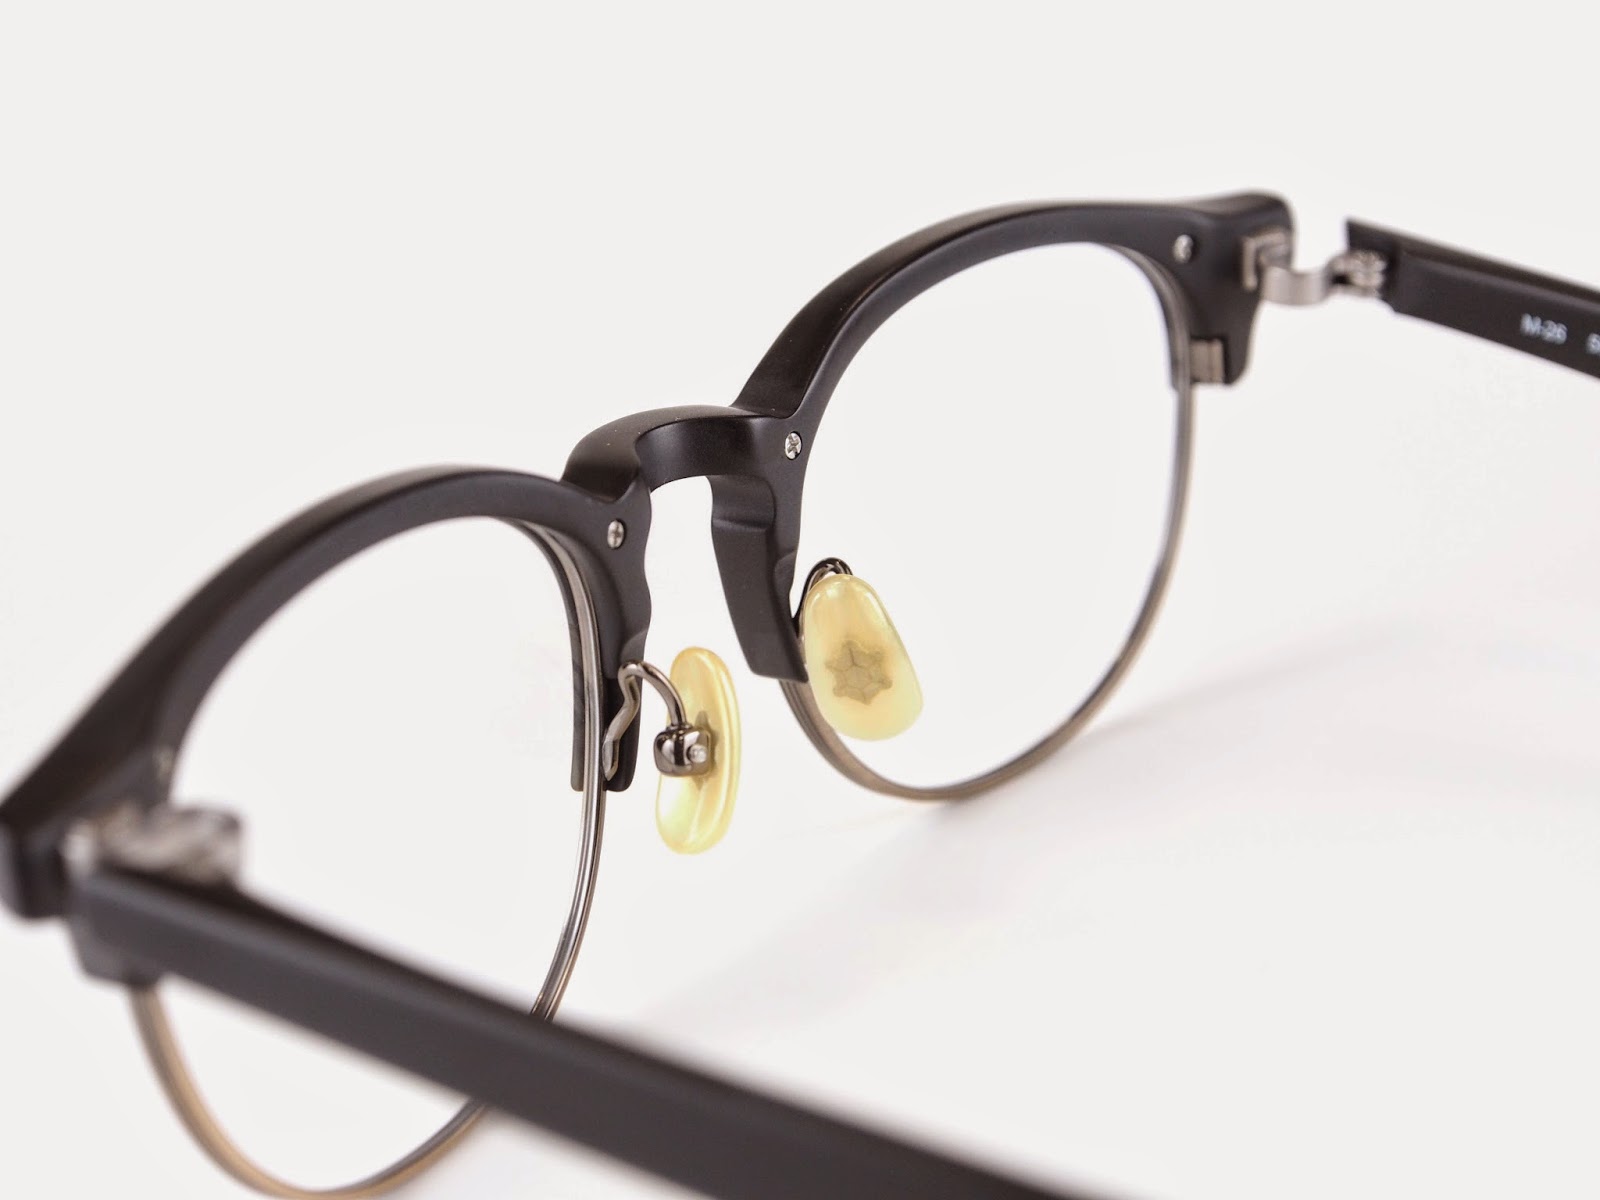 ボストンサーモント 999.9（フォーナインズ）「M-26」 | 愛知県岡崎市で1882年創業の眼鏡専門店 メガネの吉川屋ブログ